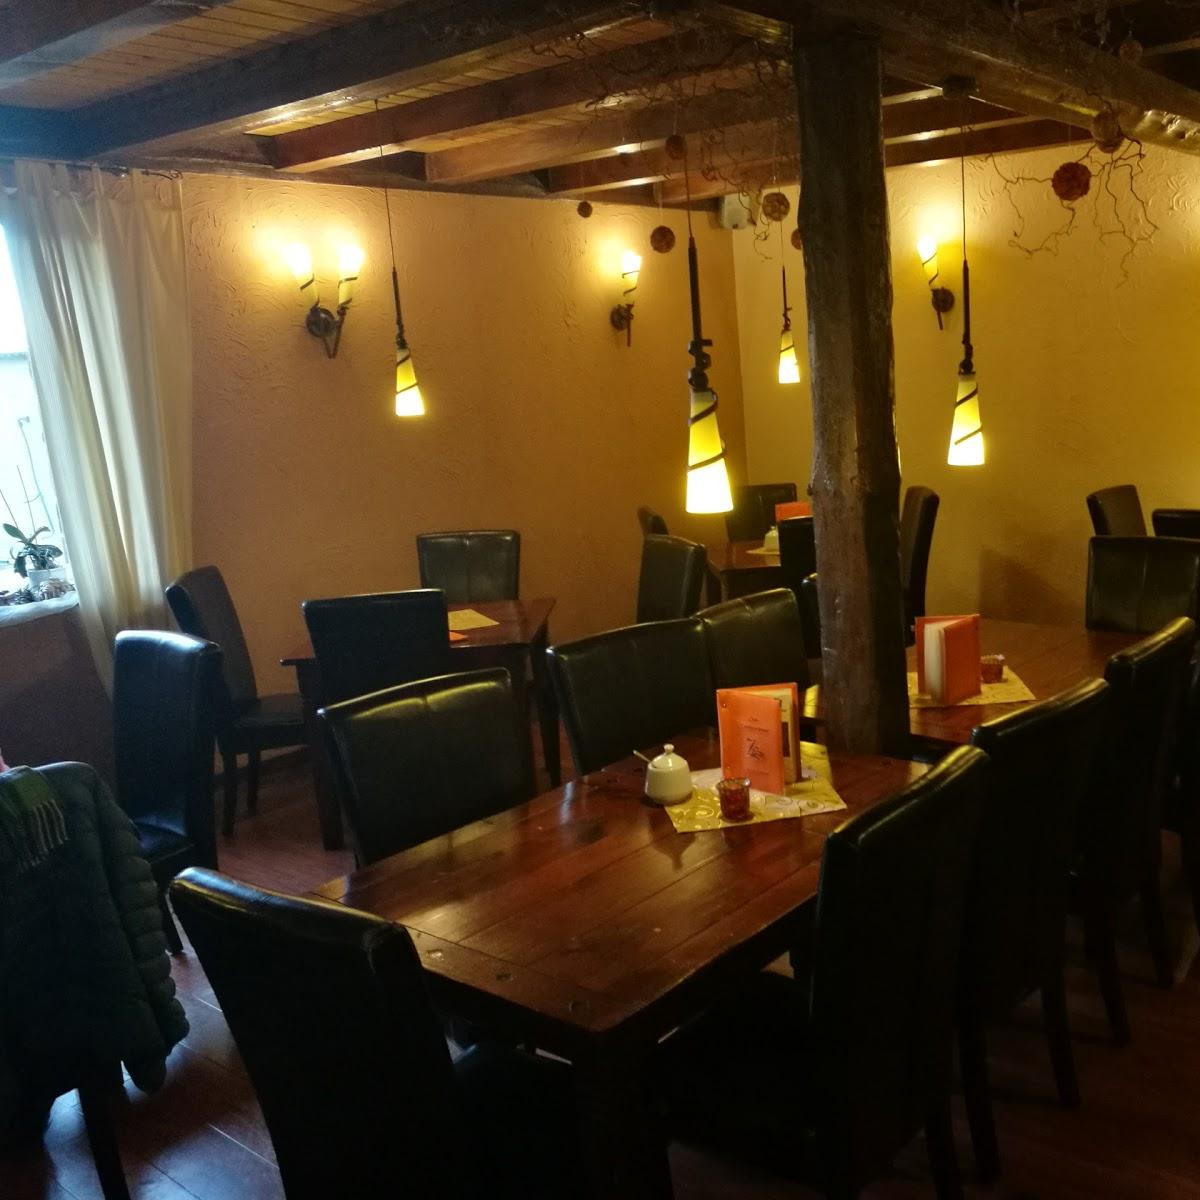 Restaurant "Cafe Zuckerscheune - Irlinger & Enkelmann" in Volkach